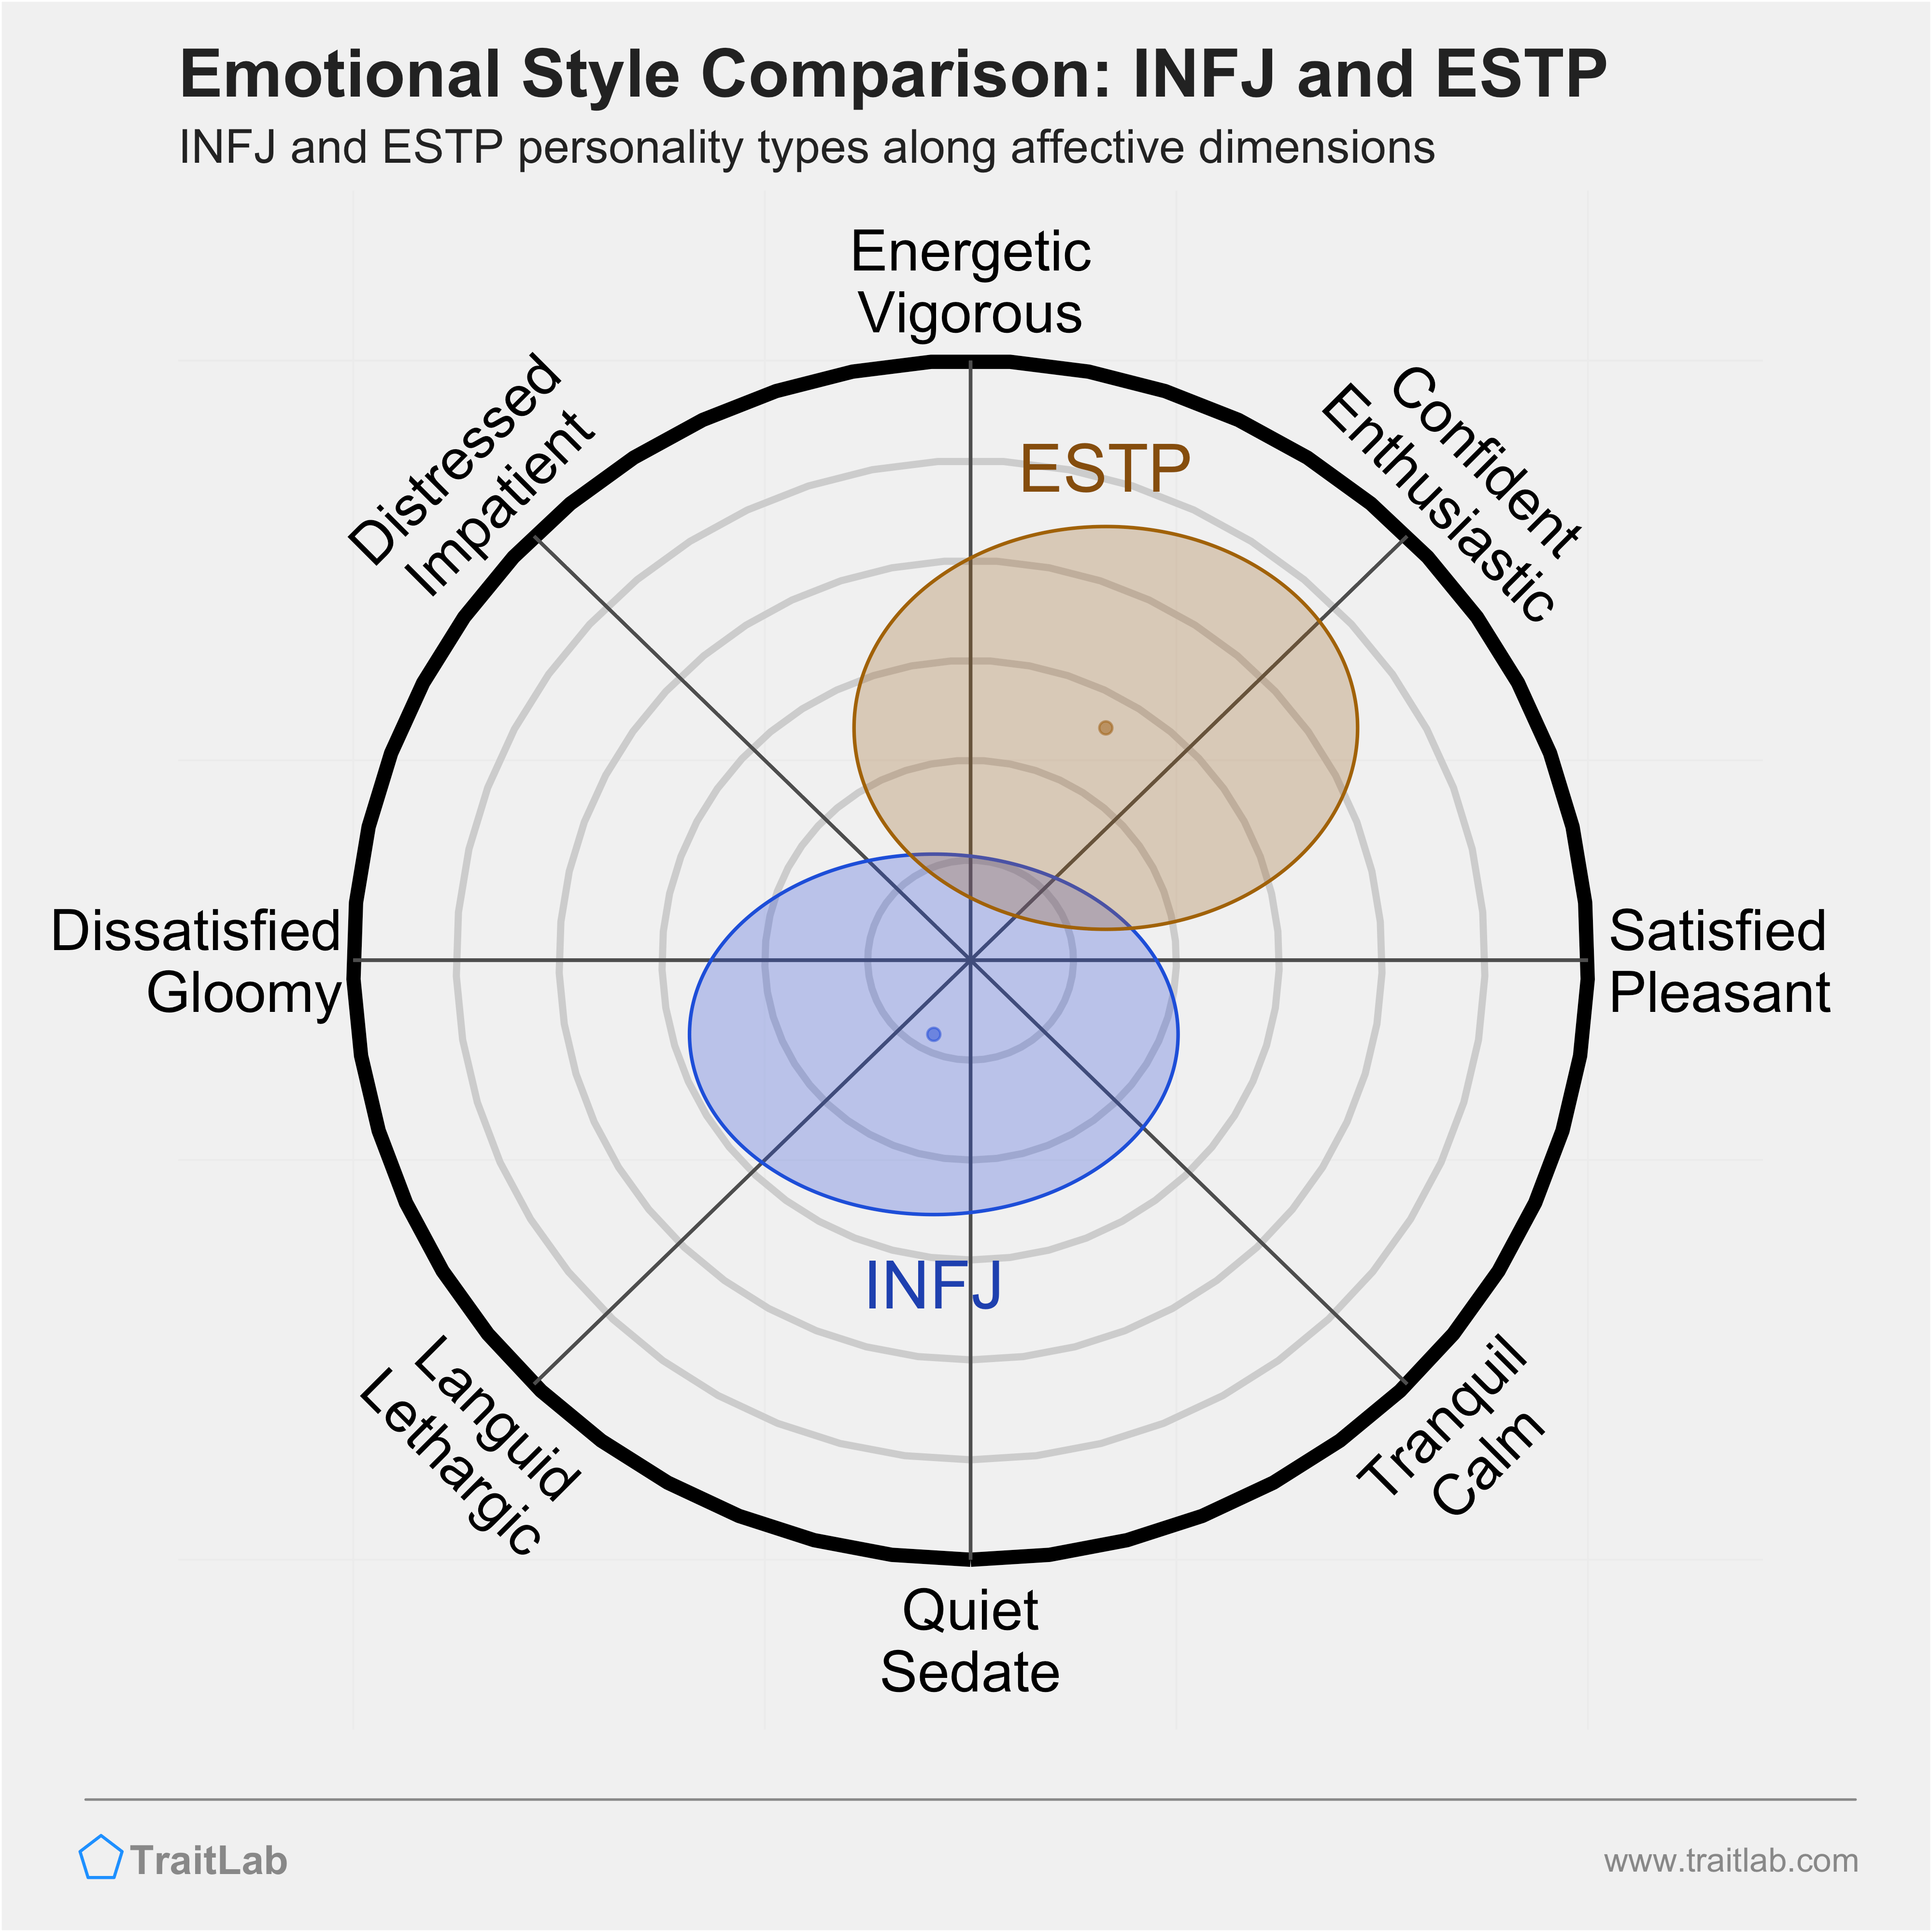 INFJ and ESTP comparison across emotional (affective) dimensions